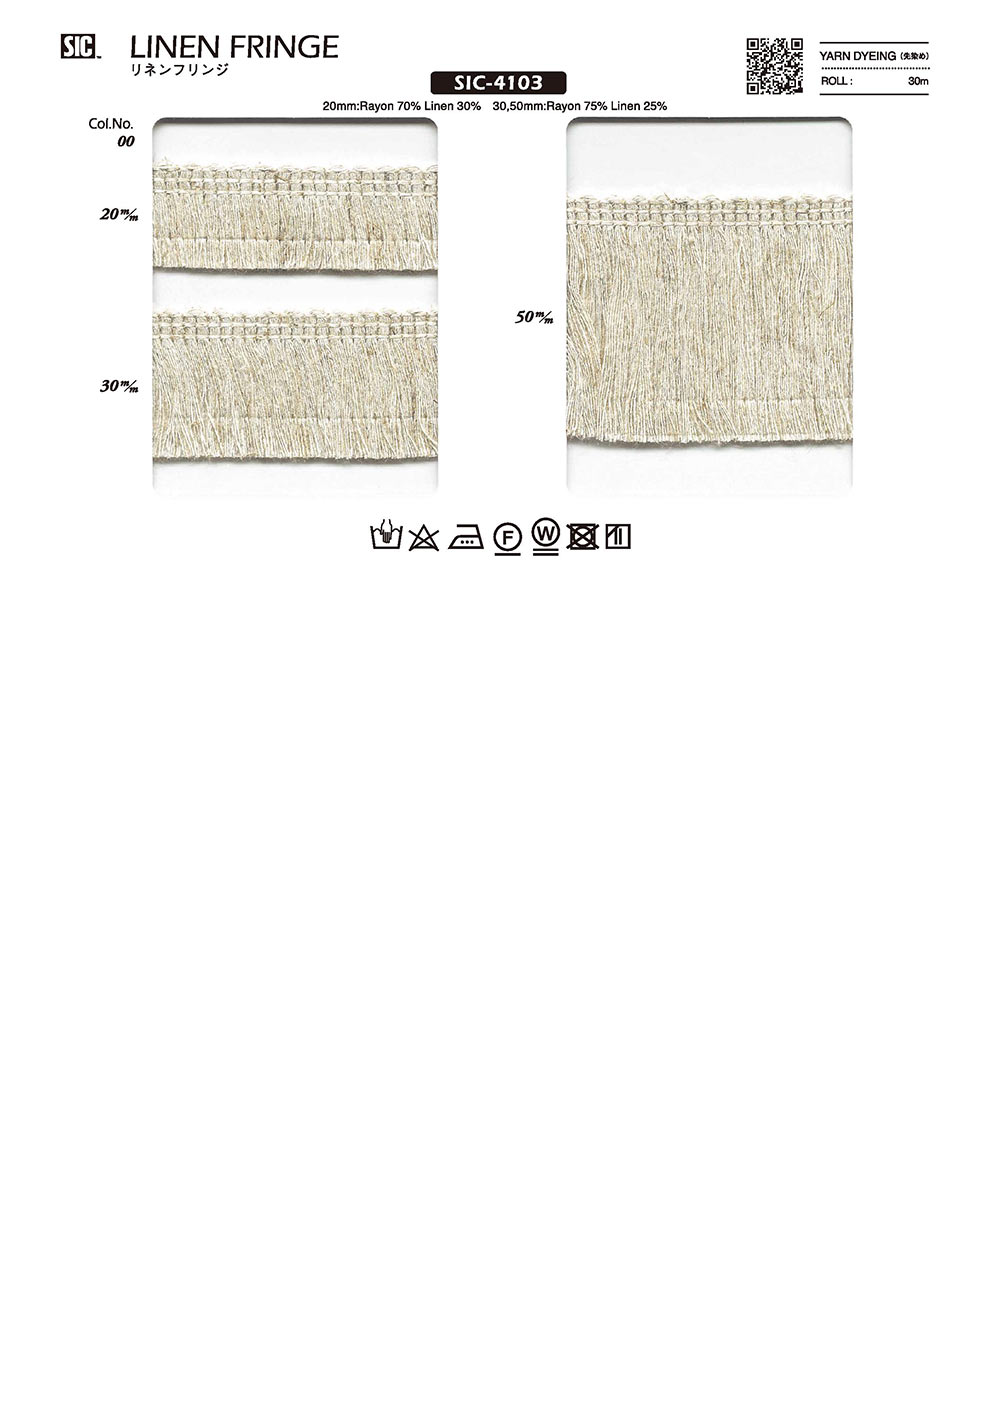 SIC-4103 Linen Fringe[Lace] SHINDO(SIC)